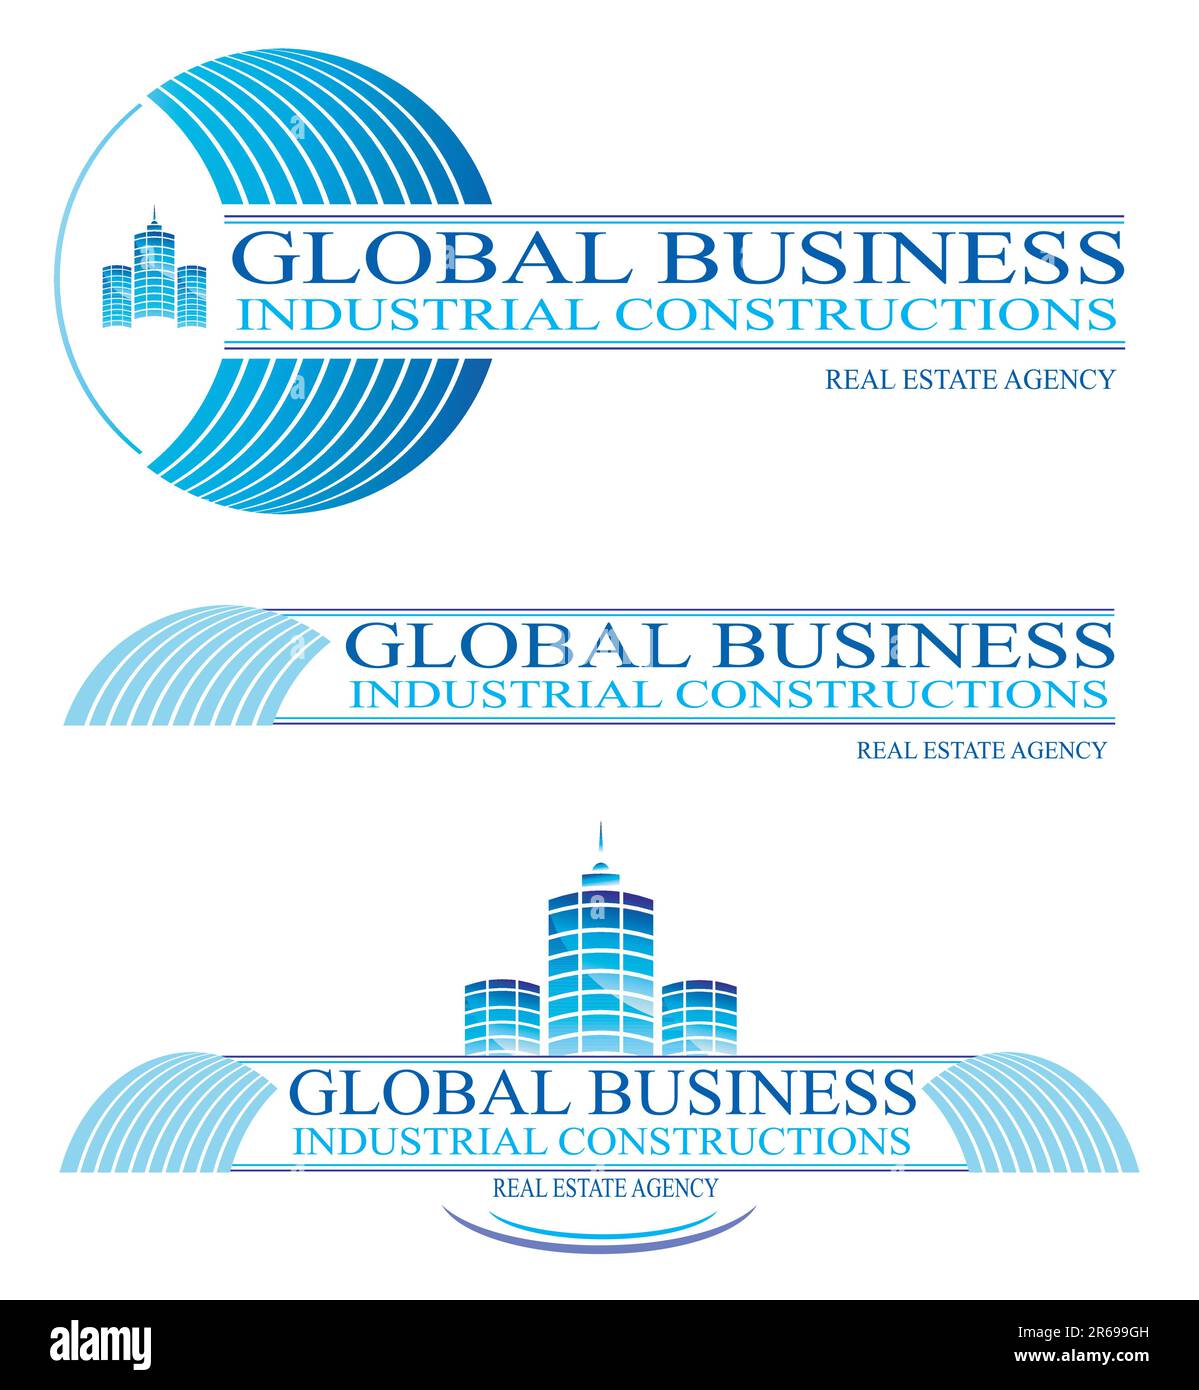 Designelemente und Symbole für Global Business and Constructions. Stock Vektor